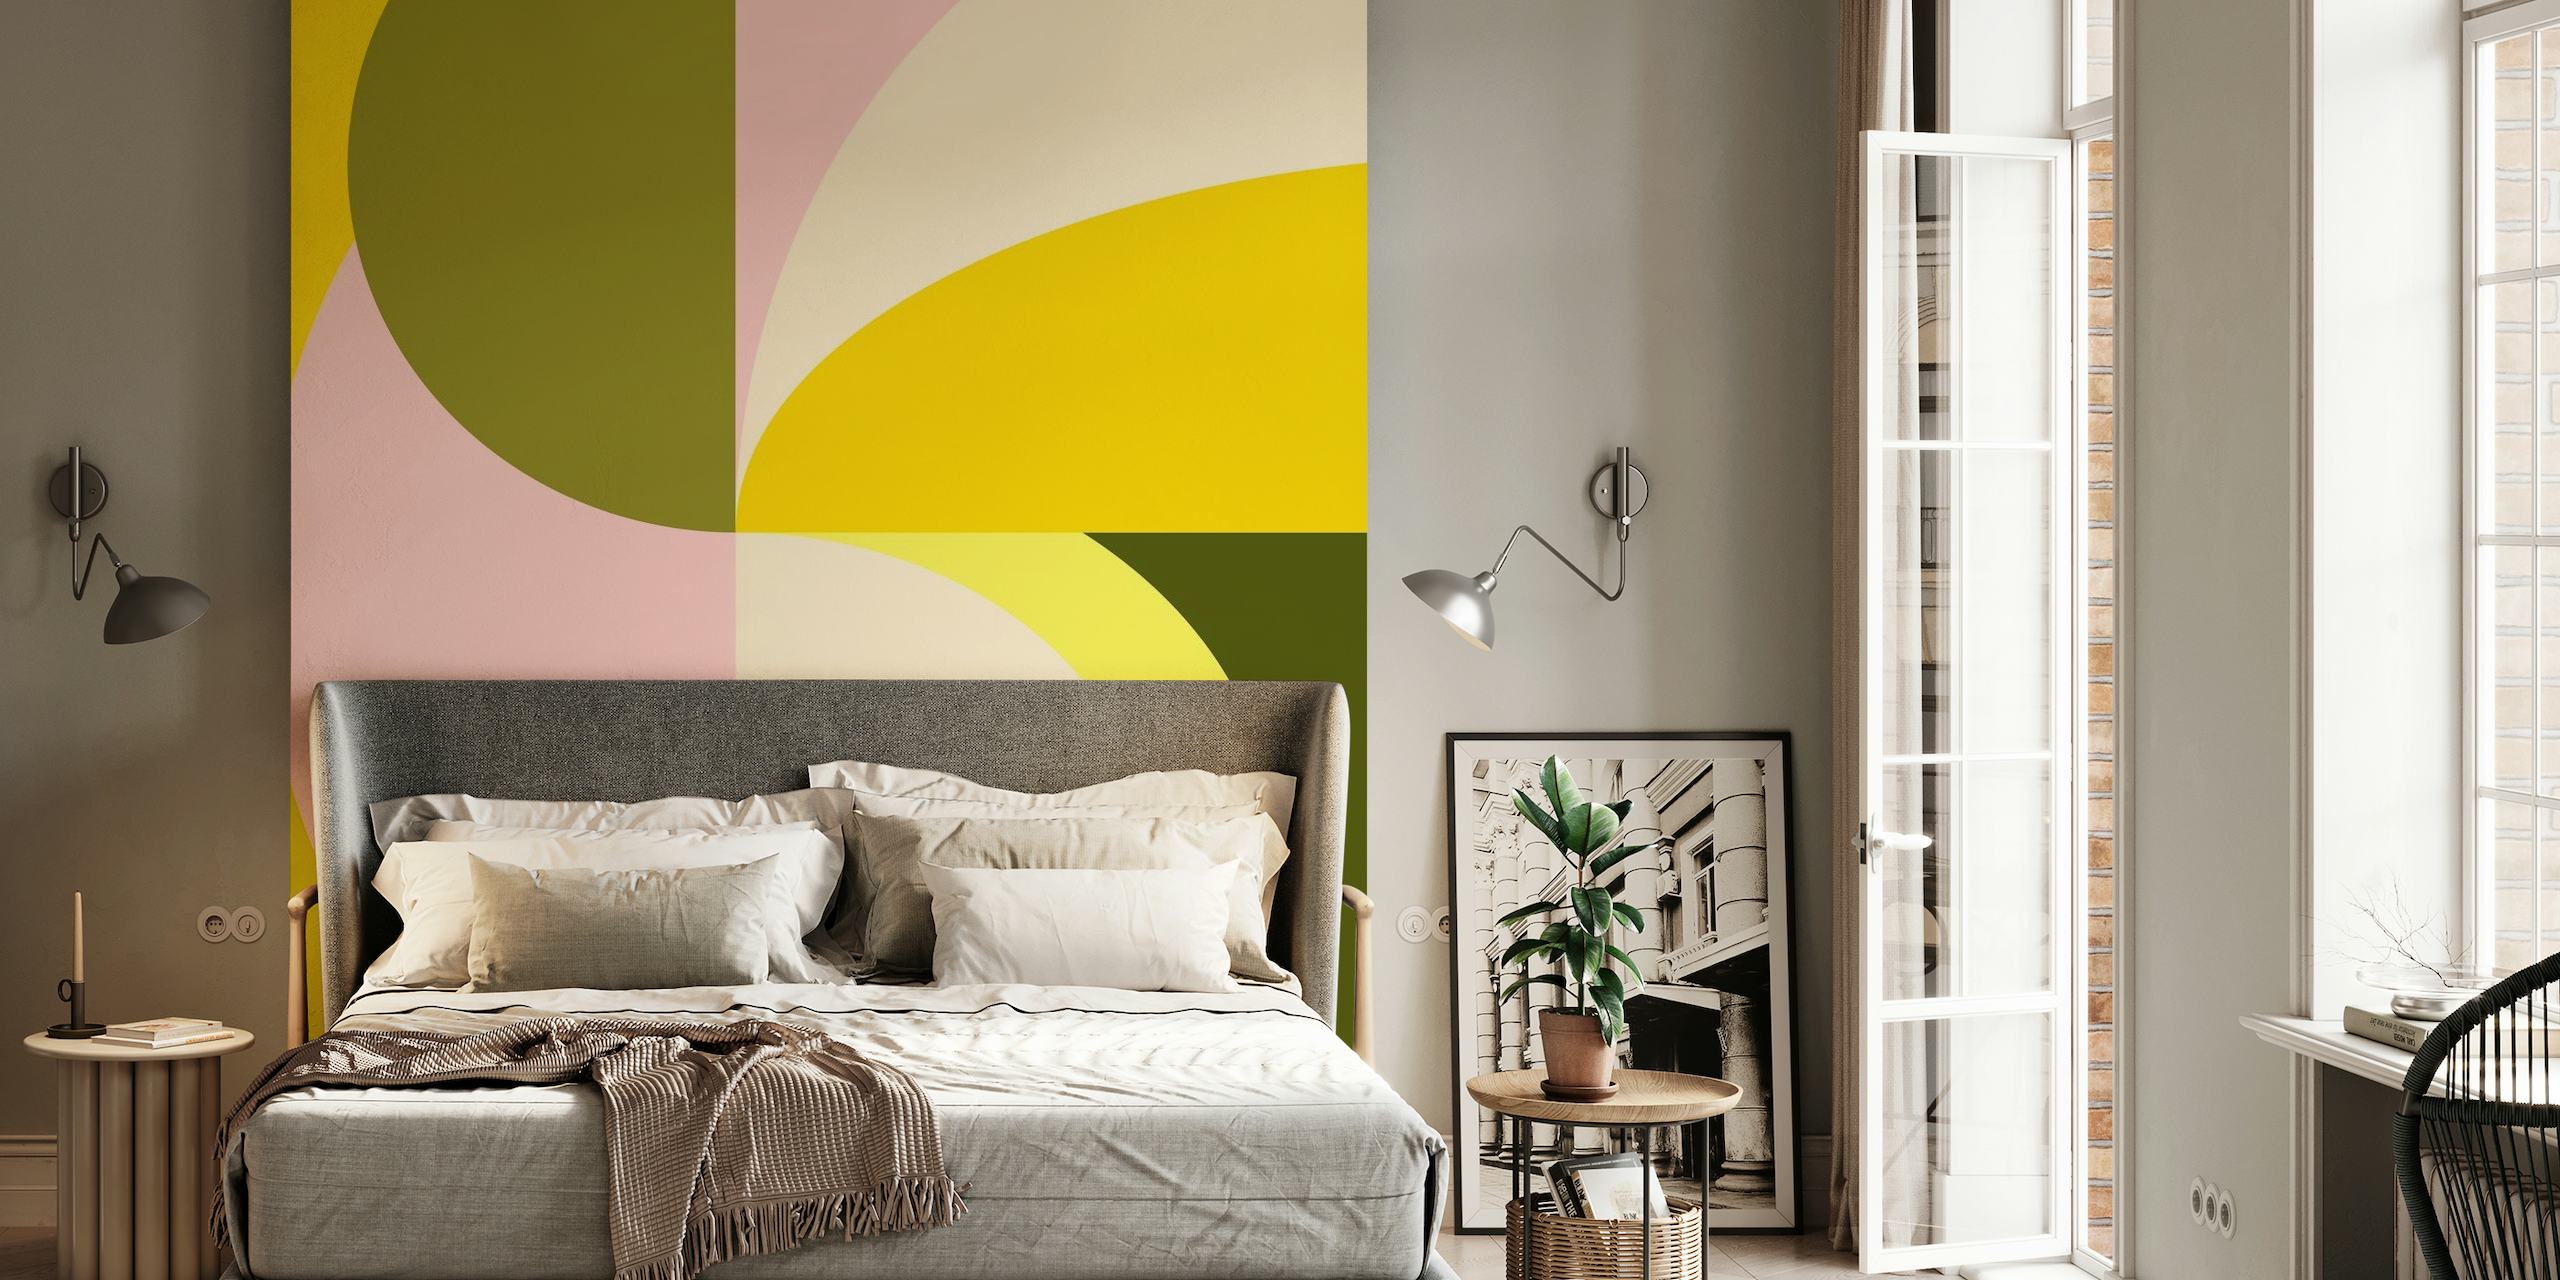 Muurschildering met abstracte geometrische vormen in citruskleuren, waaronder gele, roze en groene tinten